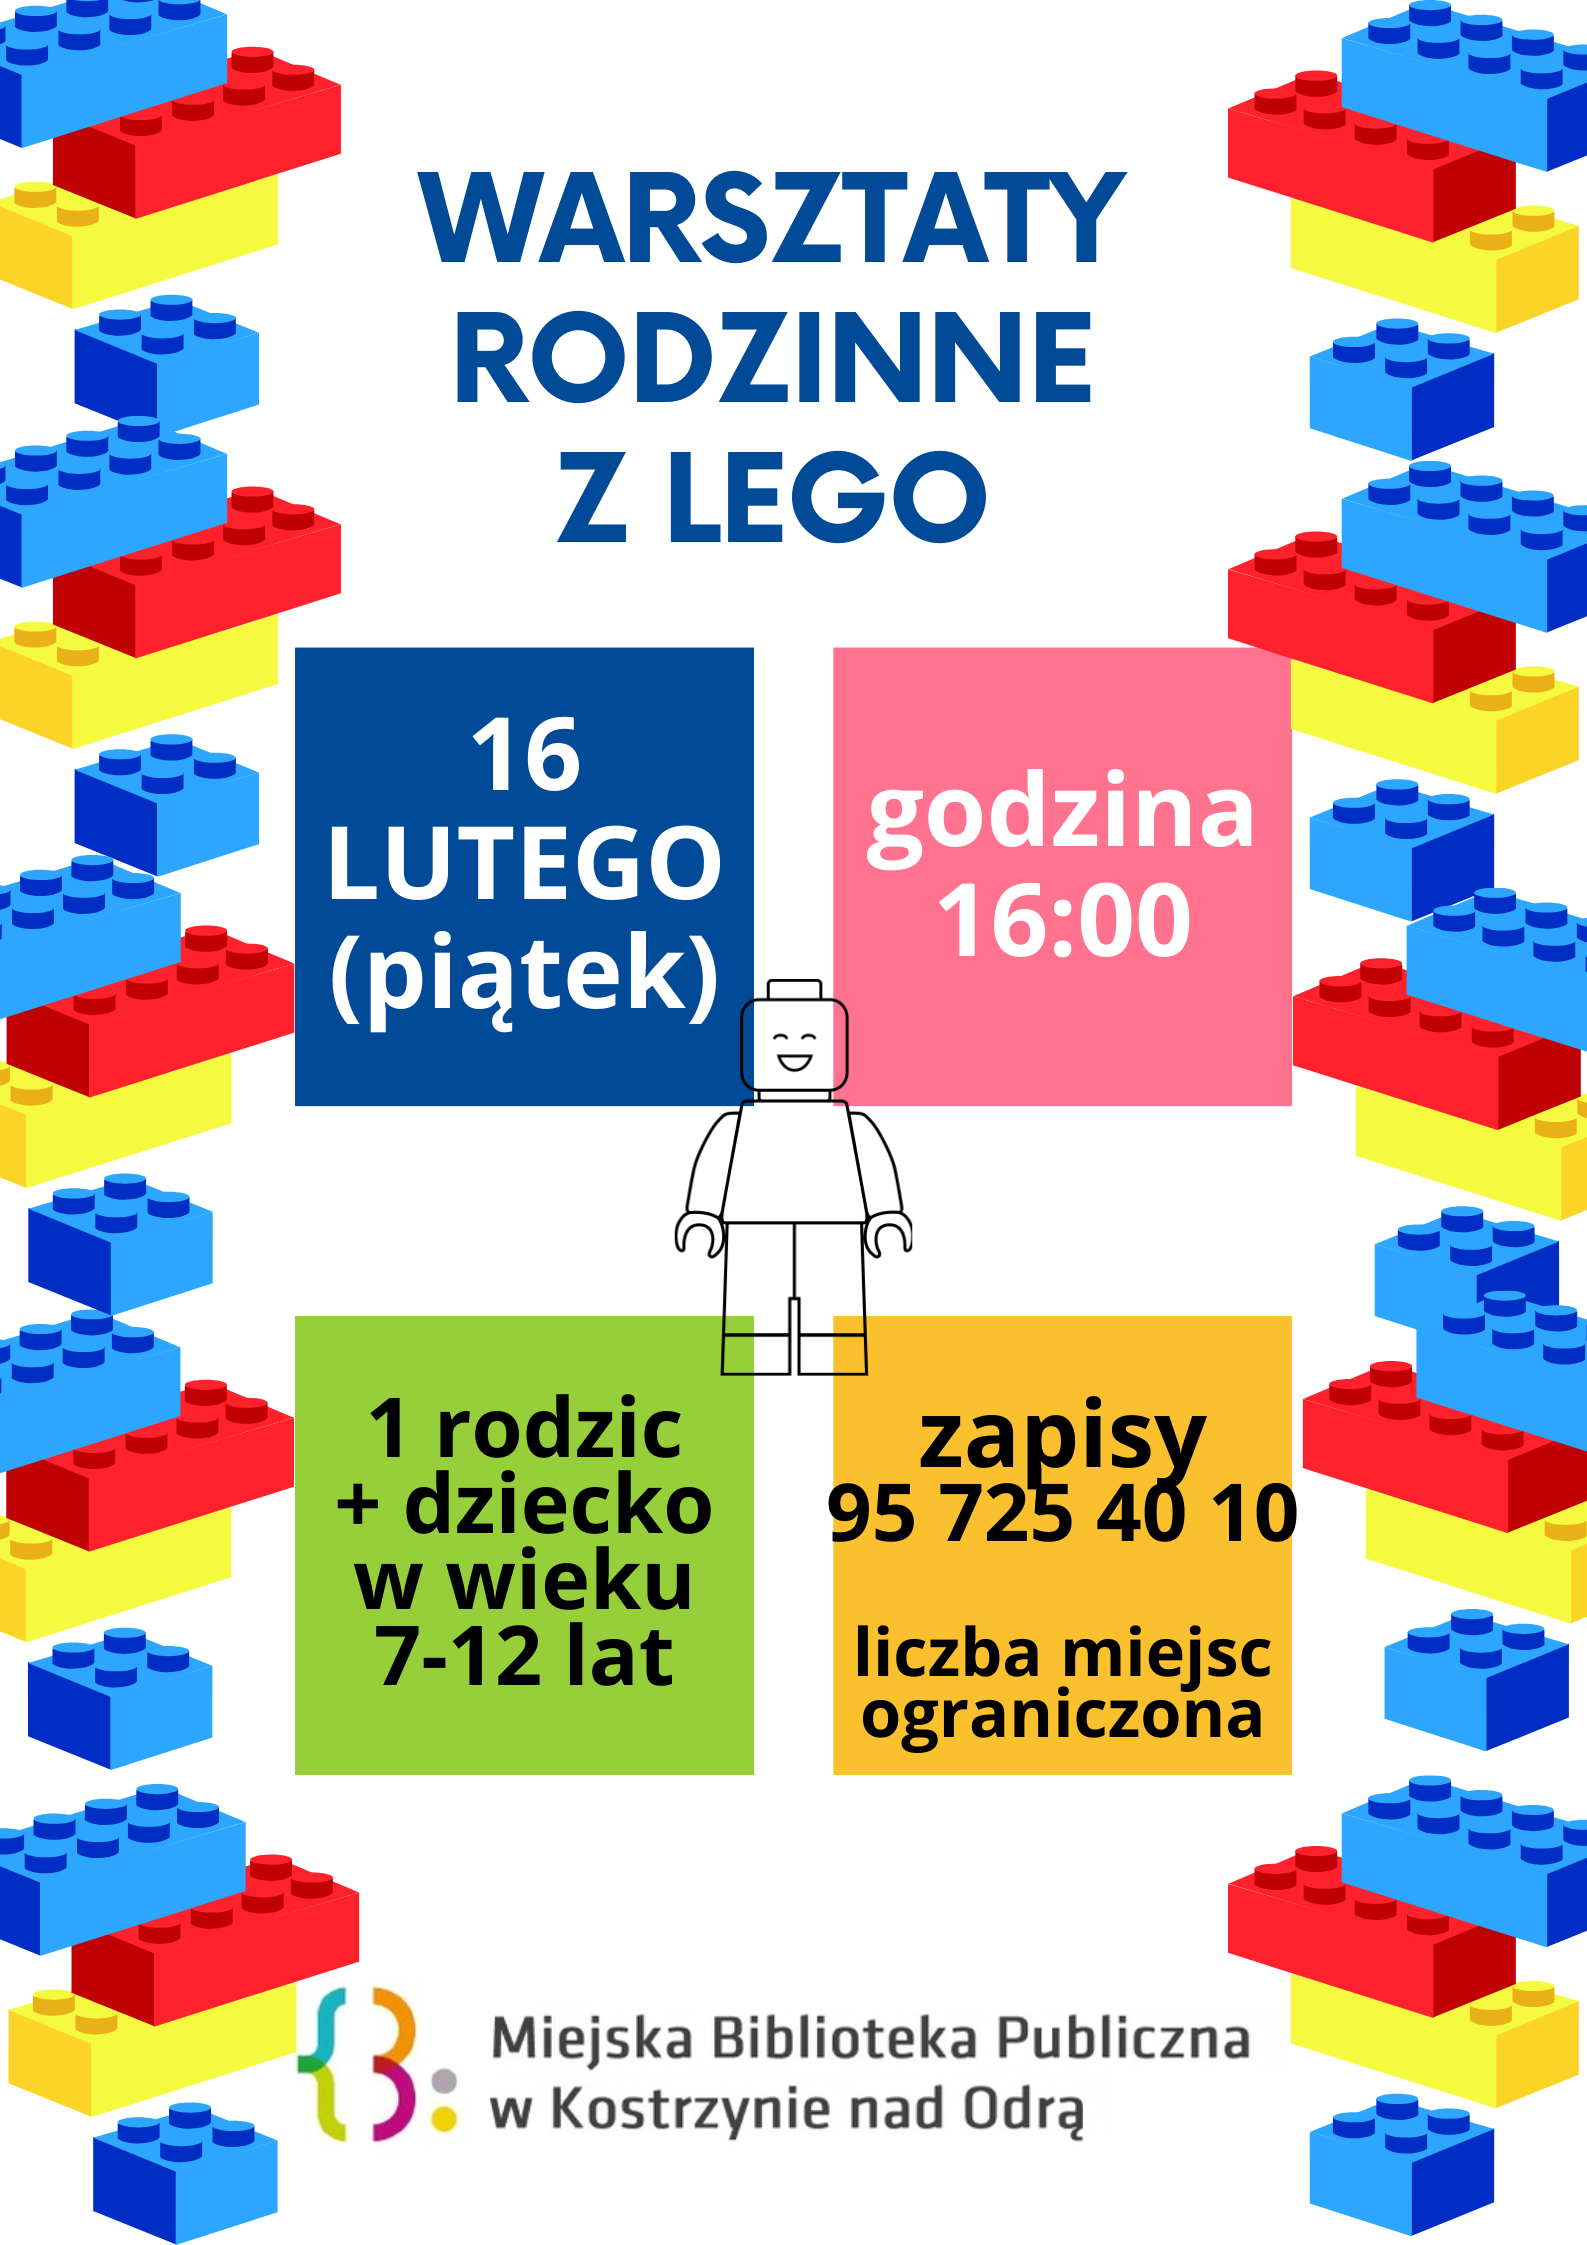 plakat informacyjny dot. zapisów na warsztaty rodzinne z Lego